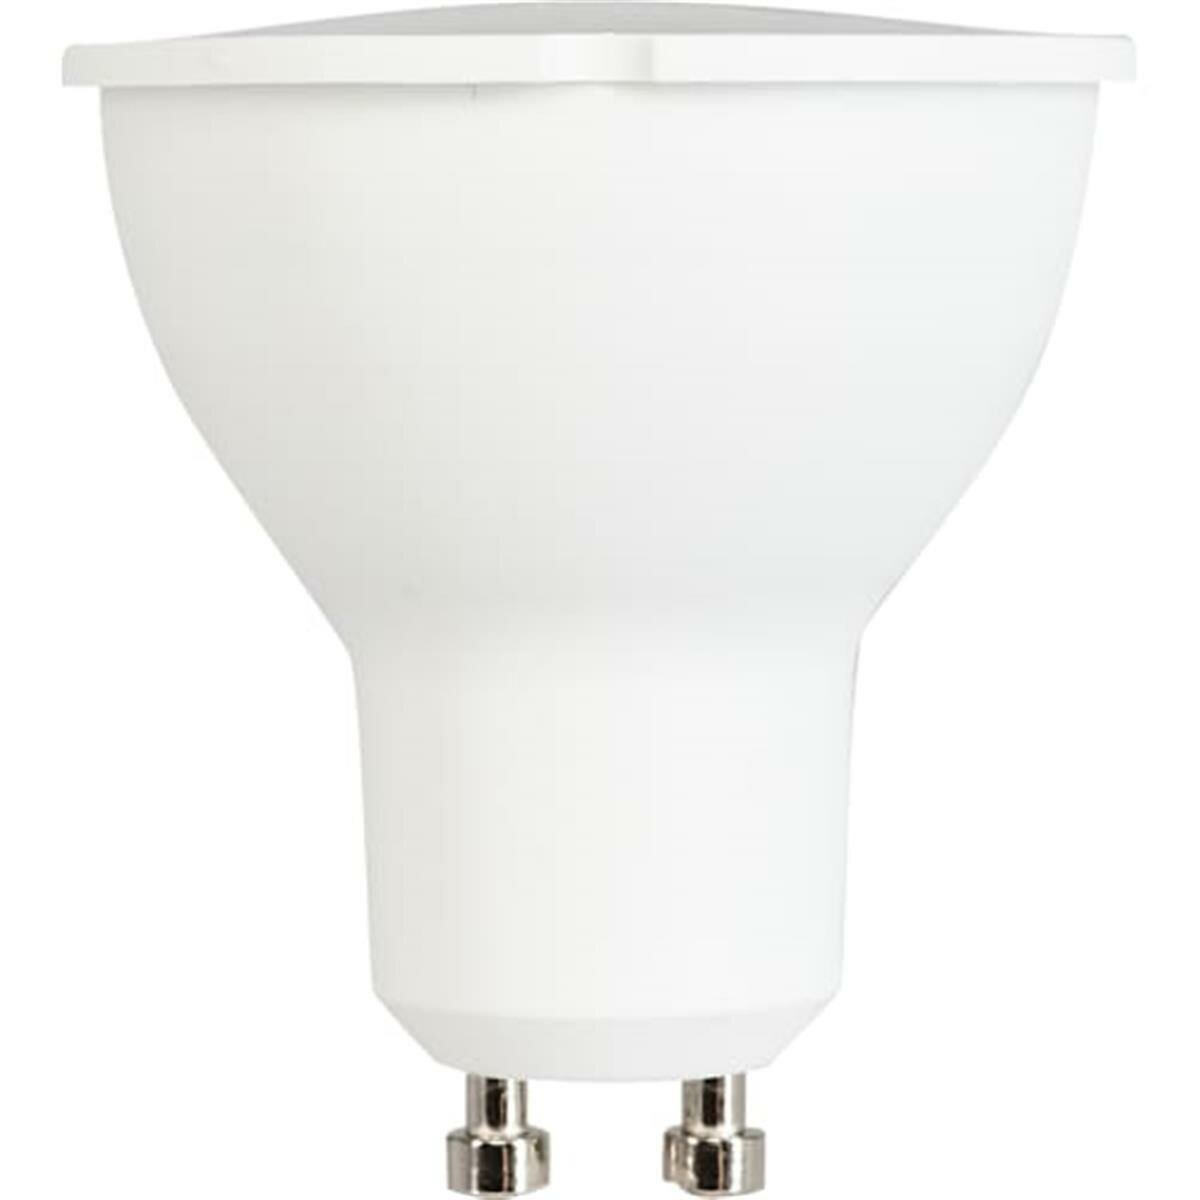 Лампа светодиодная GU10 220 В 7 Вт спот 600 лм, тёплый белый свет